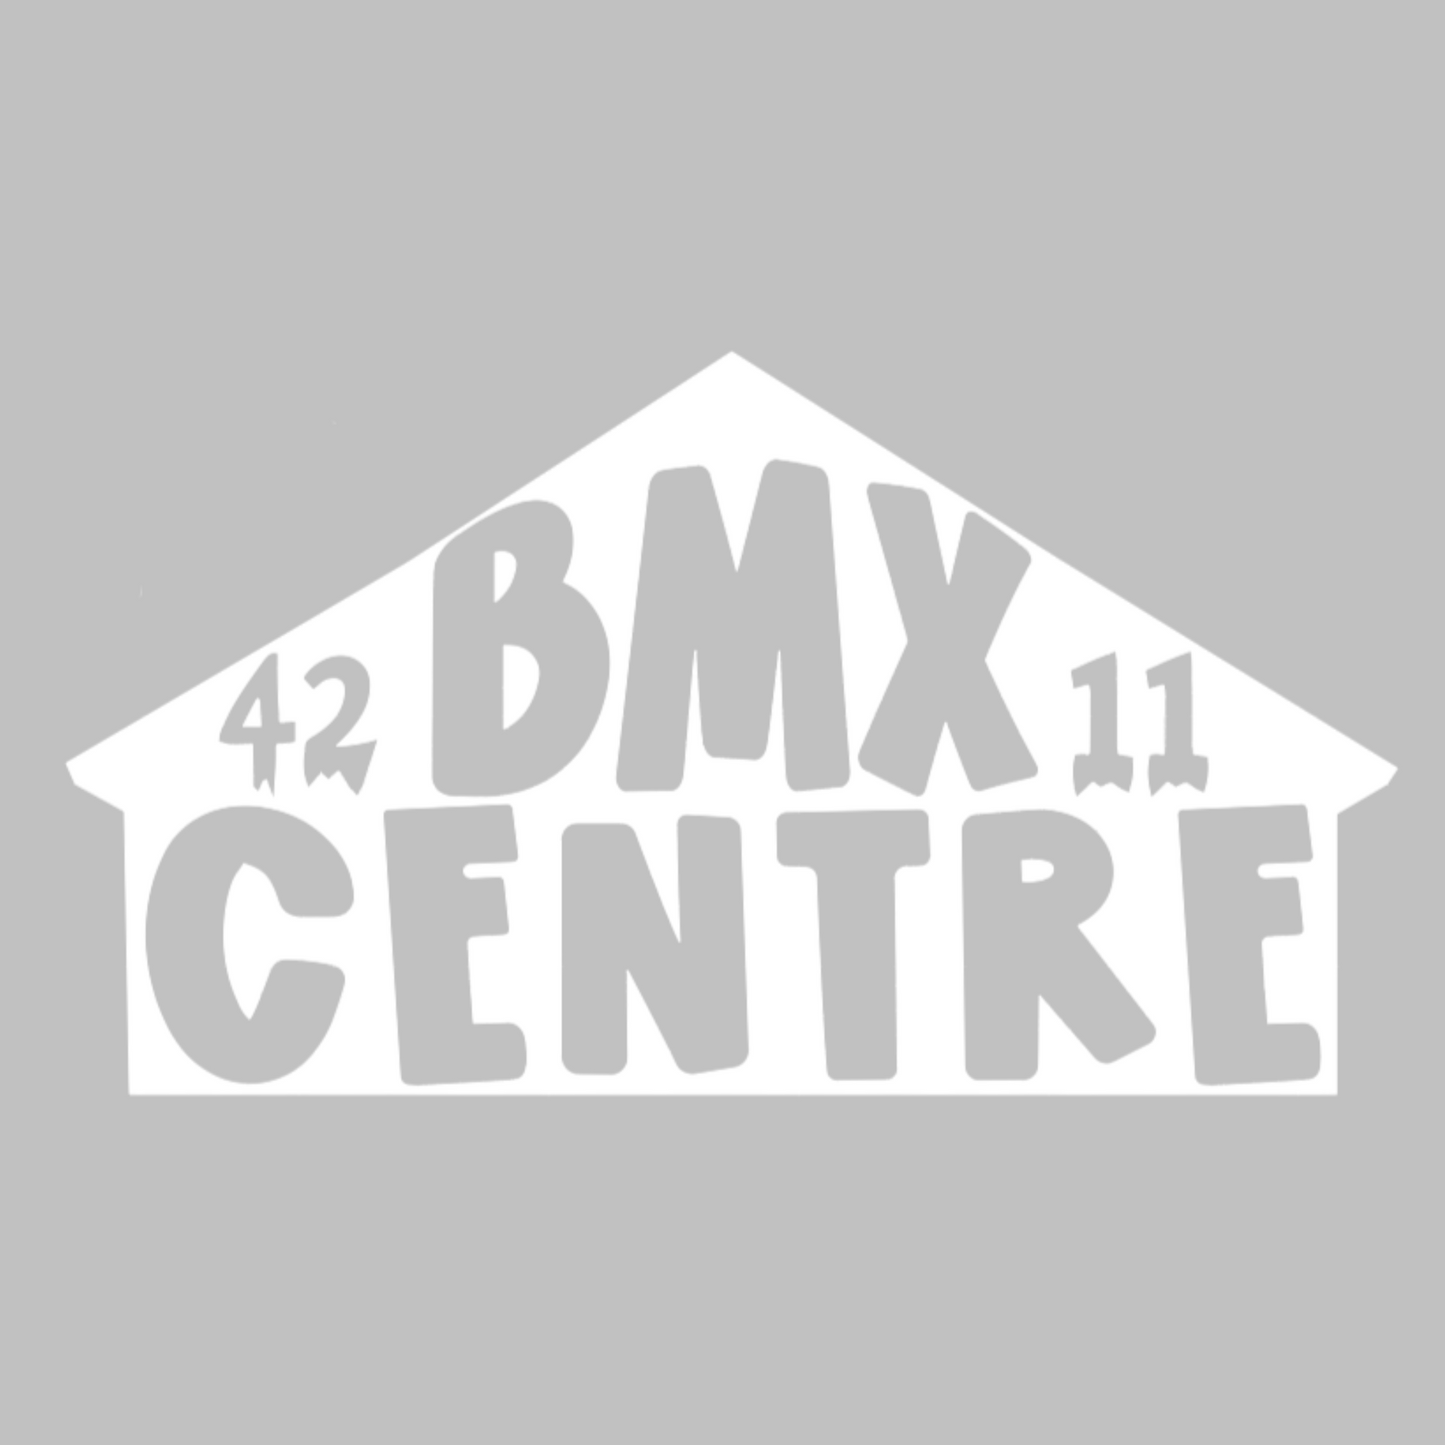 BMX Centre Barn Vinyl Cut Sticker